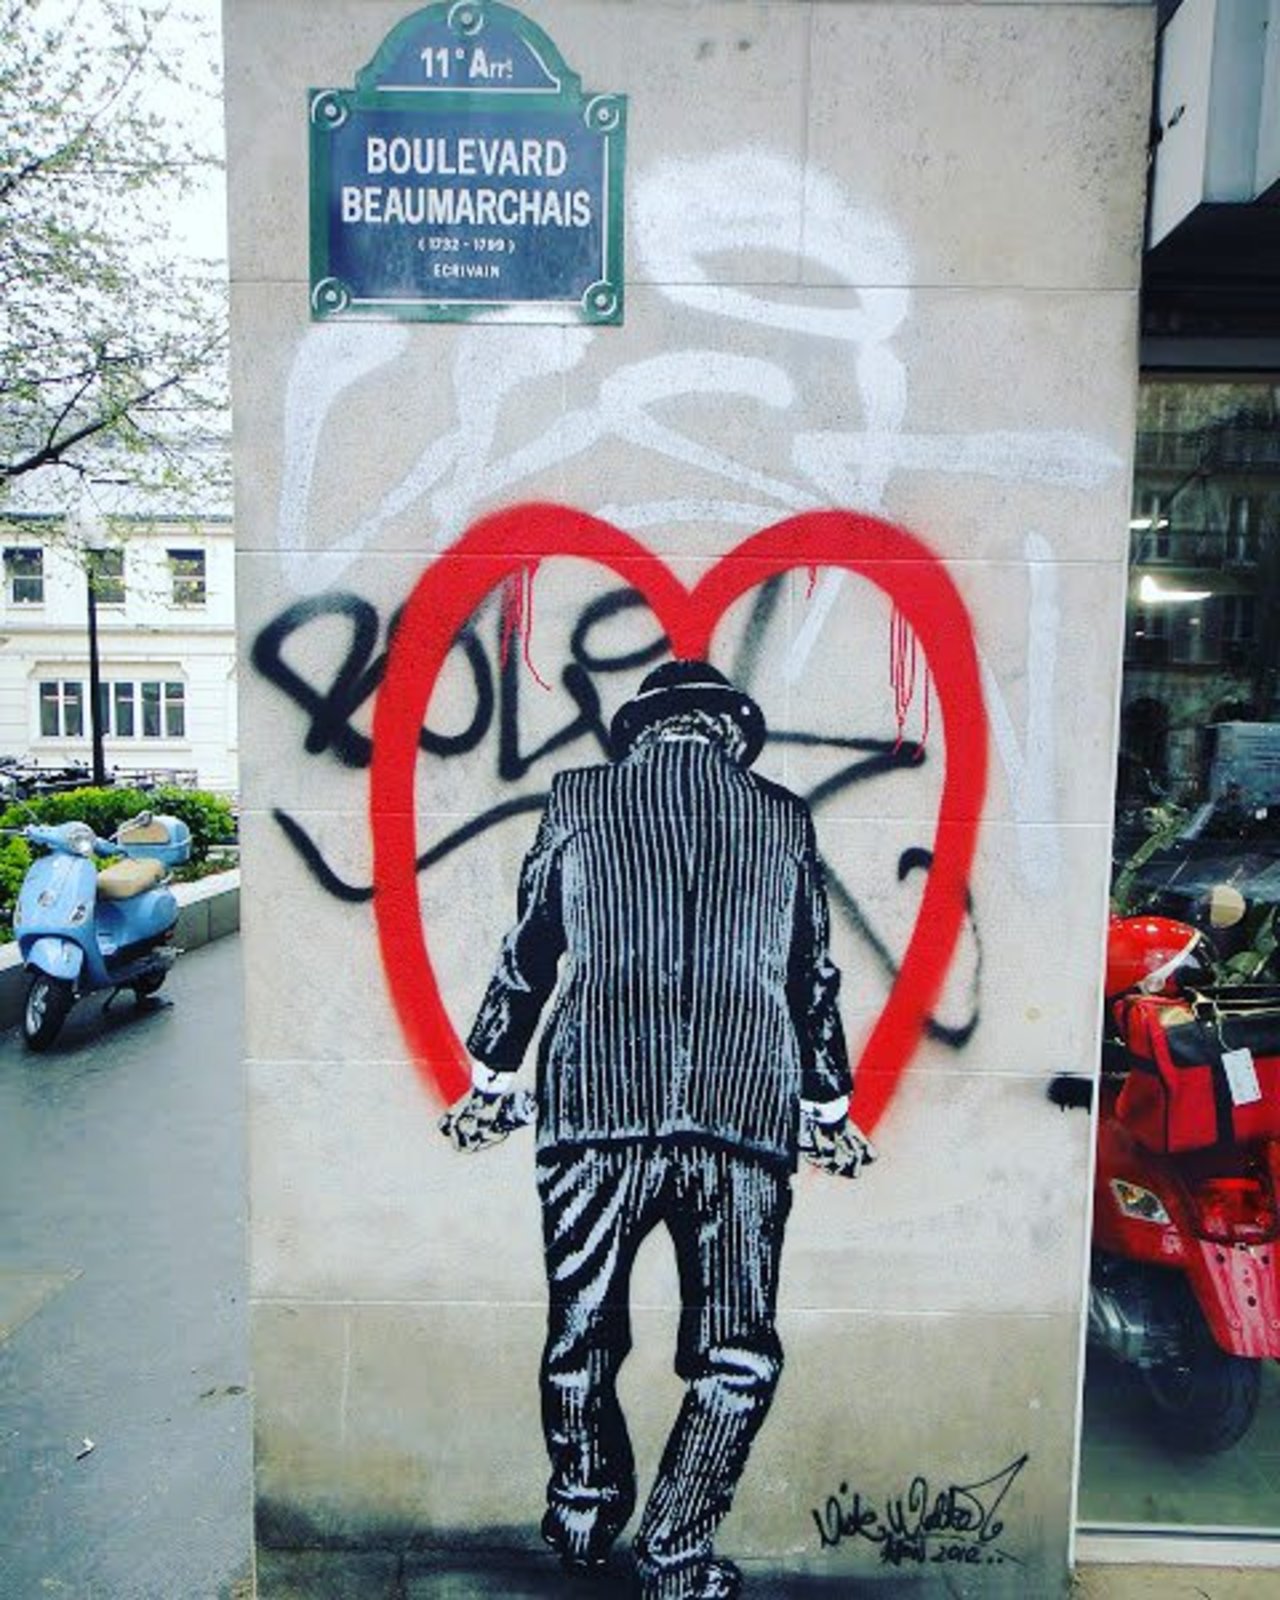 #Paris #graffiti photo by @girlwithstyle78 http://ift.tt/1MZkt1H #StreetArt https://t.co/71cCADsTNi